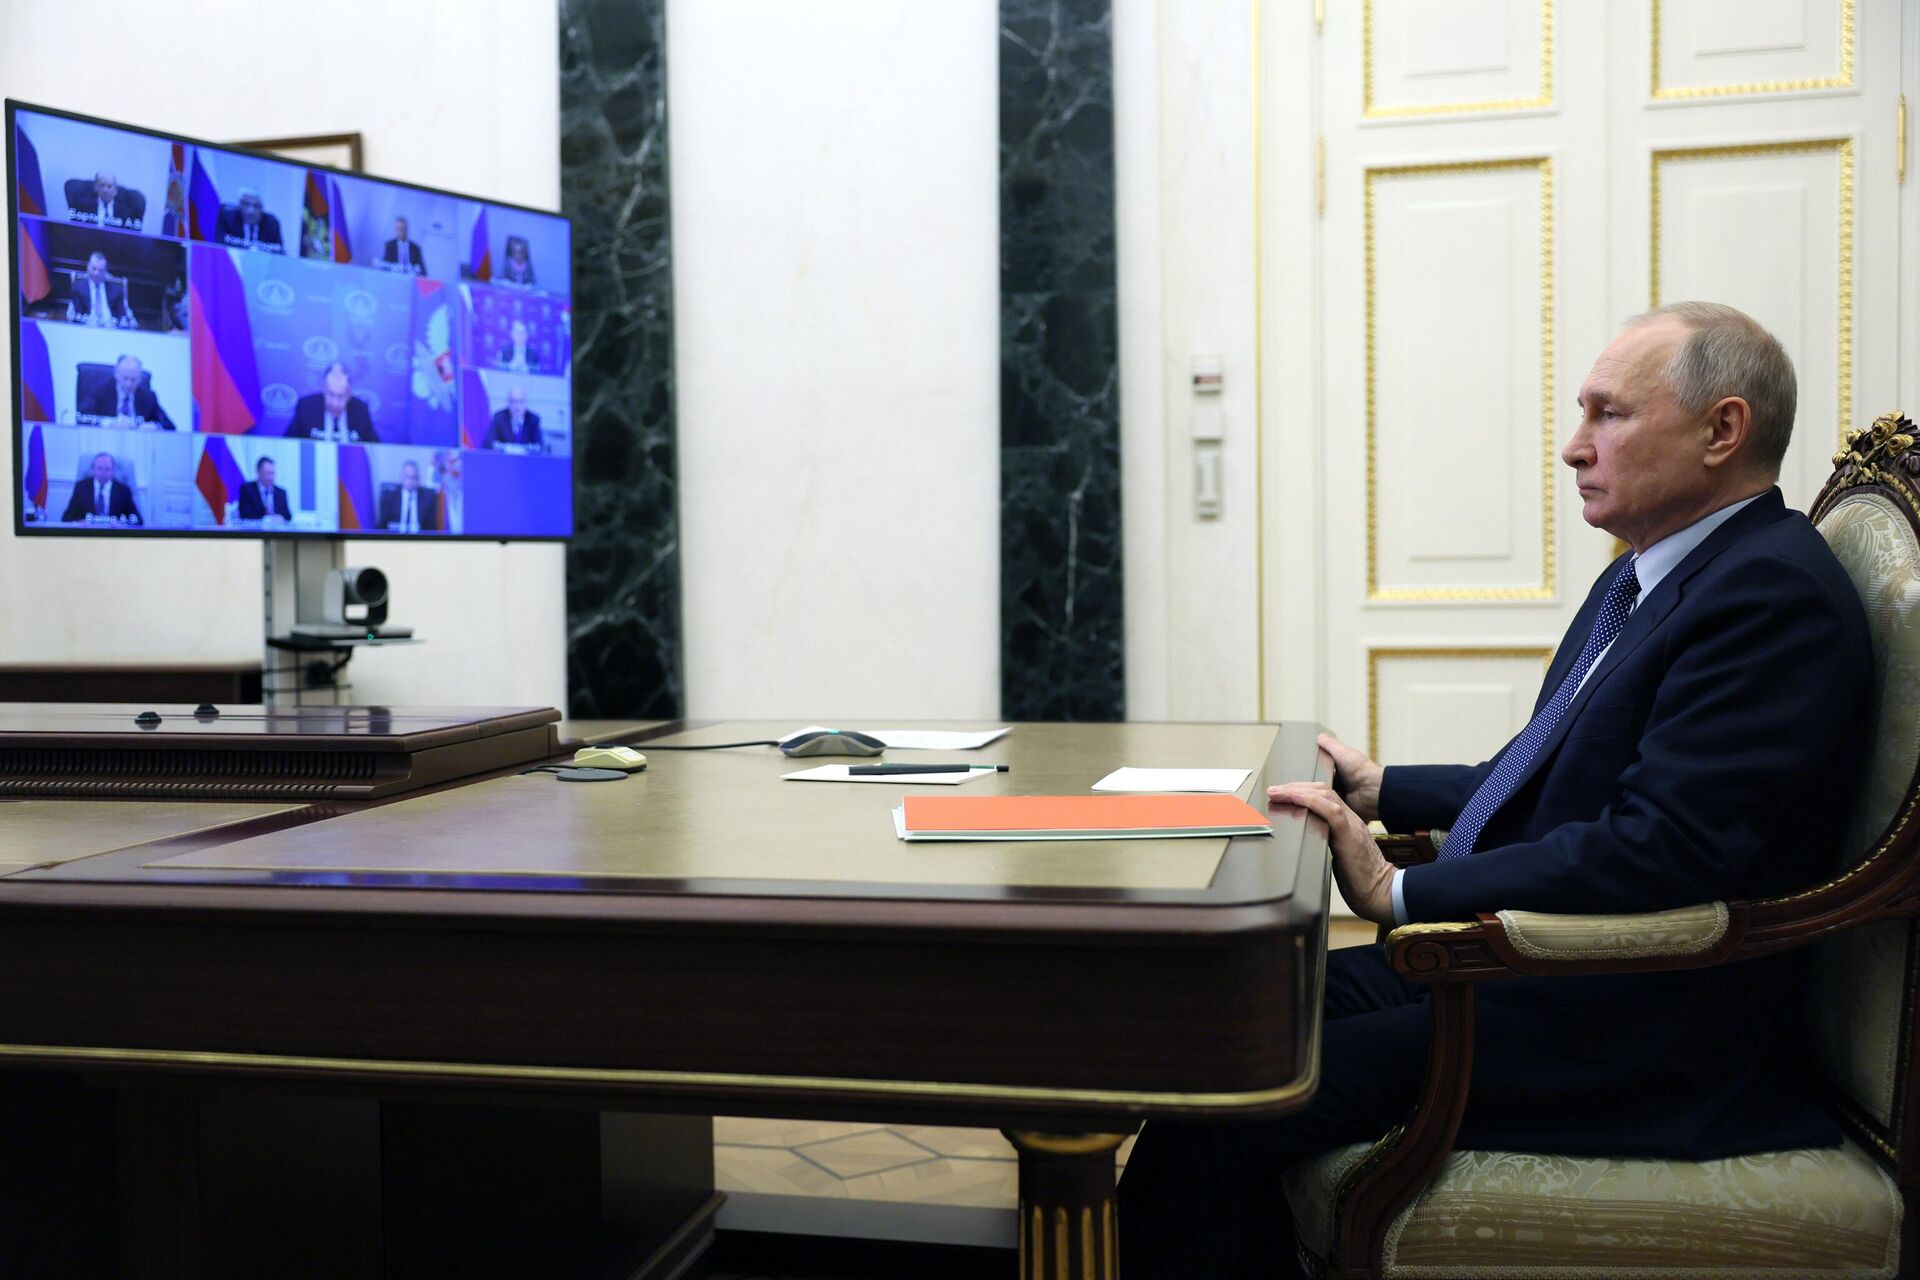 Cuộc họp của Tổng thống Putin với các thành viên thường trực của Hội đồng An ninh Liên bang Nga qua hội nghị truyền hình. - Sputnik Việt Nam, 1920, 31.03.2023